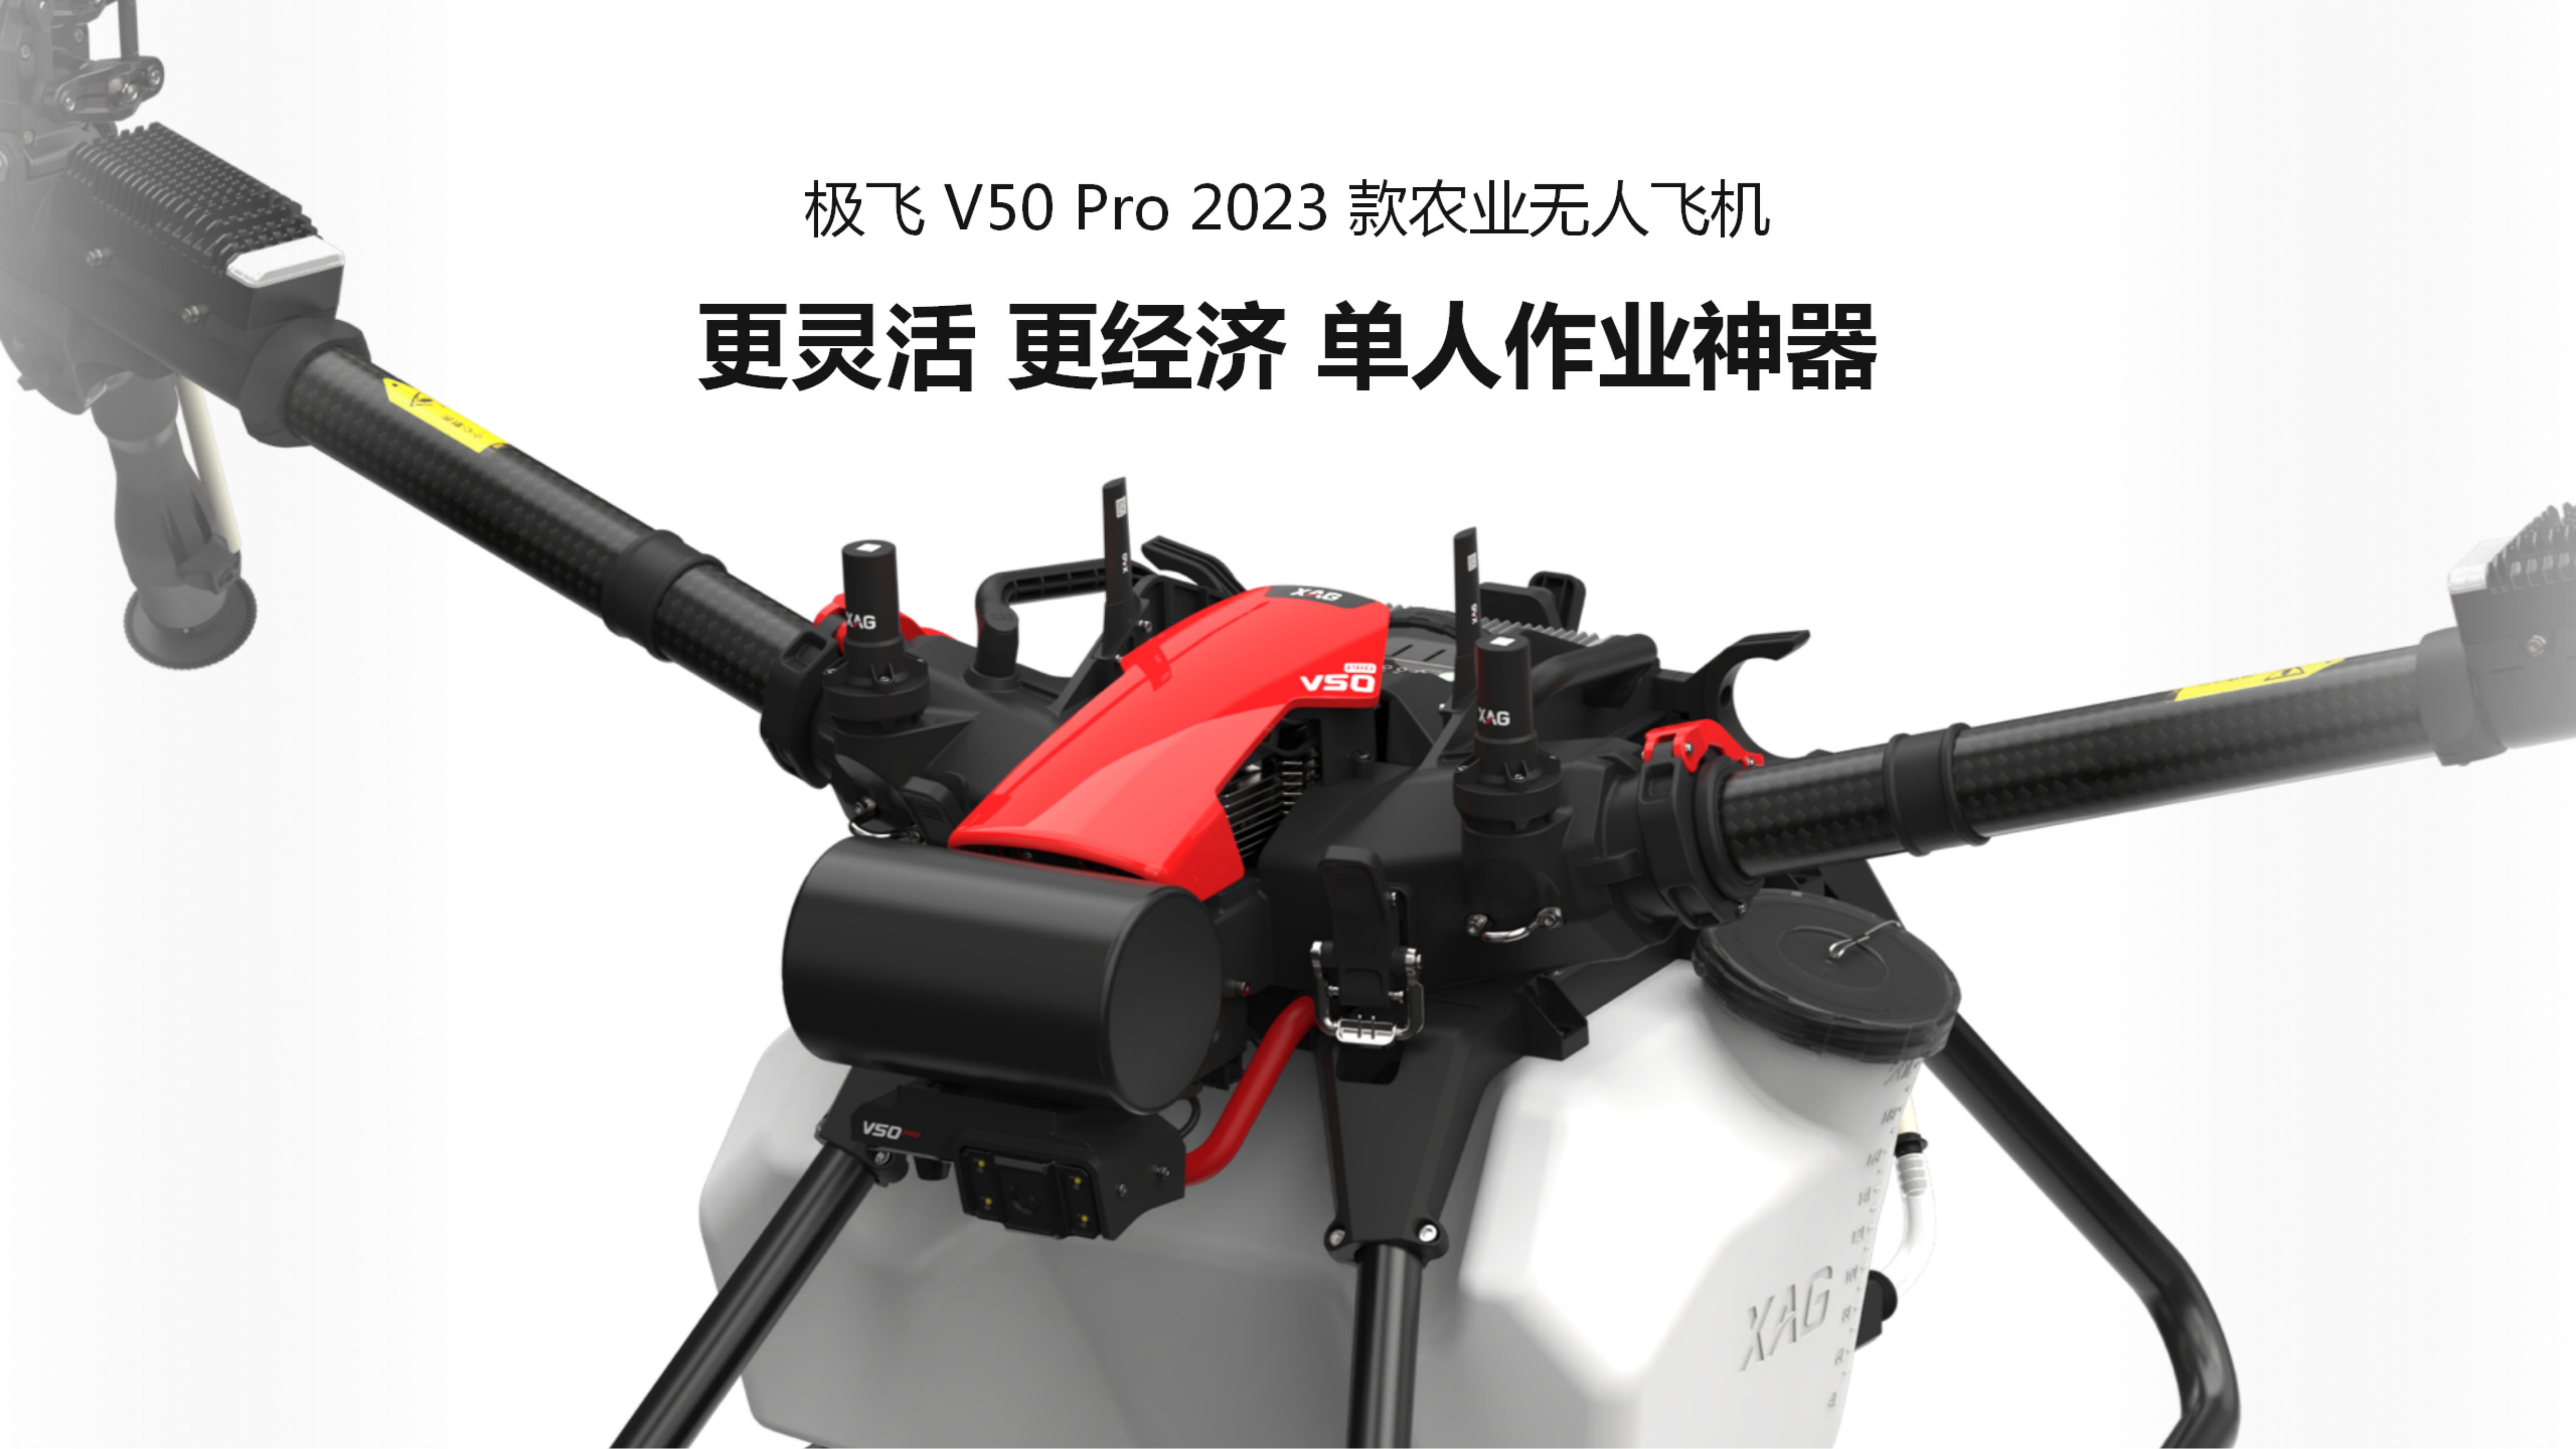 極飛 V50 Pro 農業無人飛機推介會課件_20221116_02.png